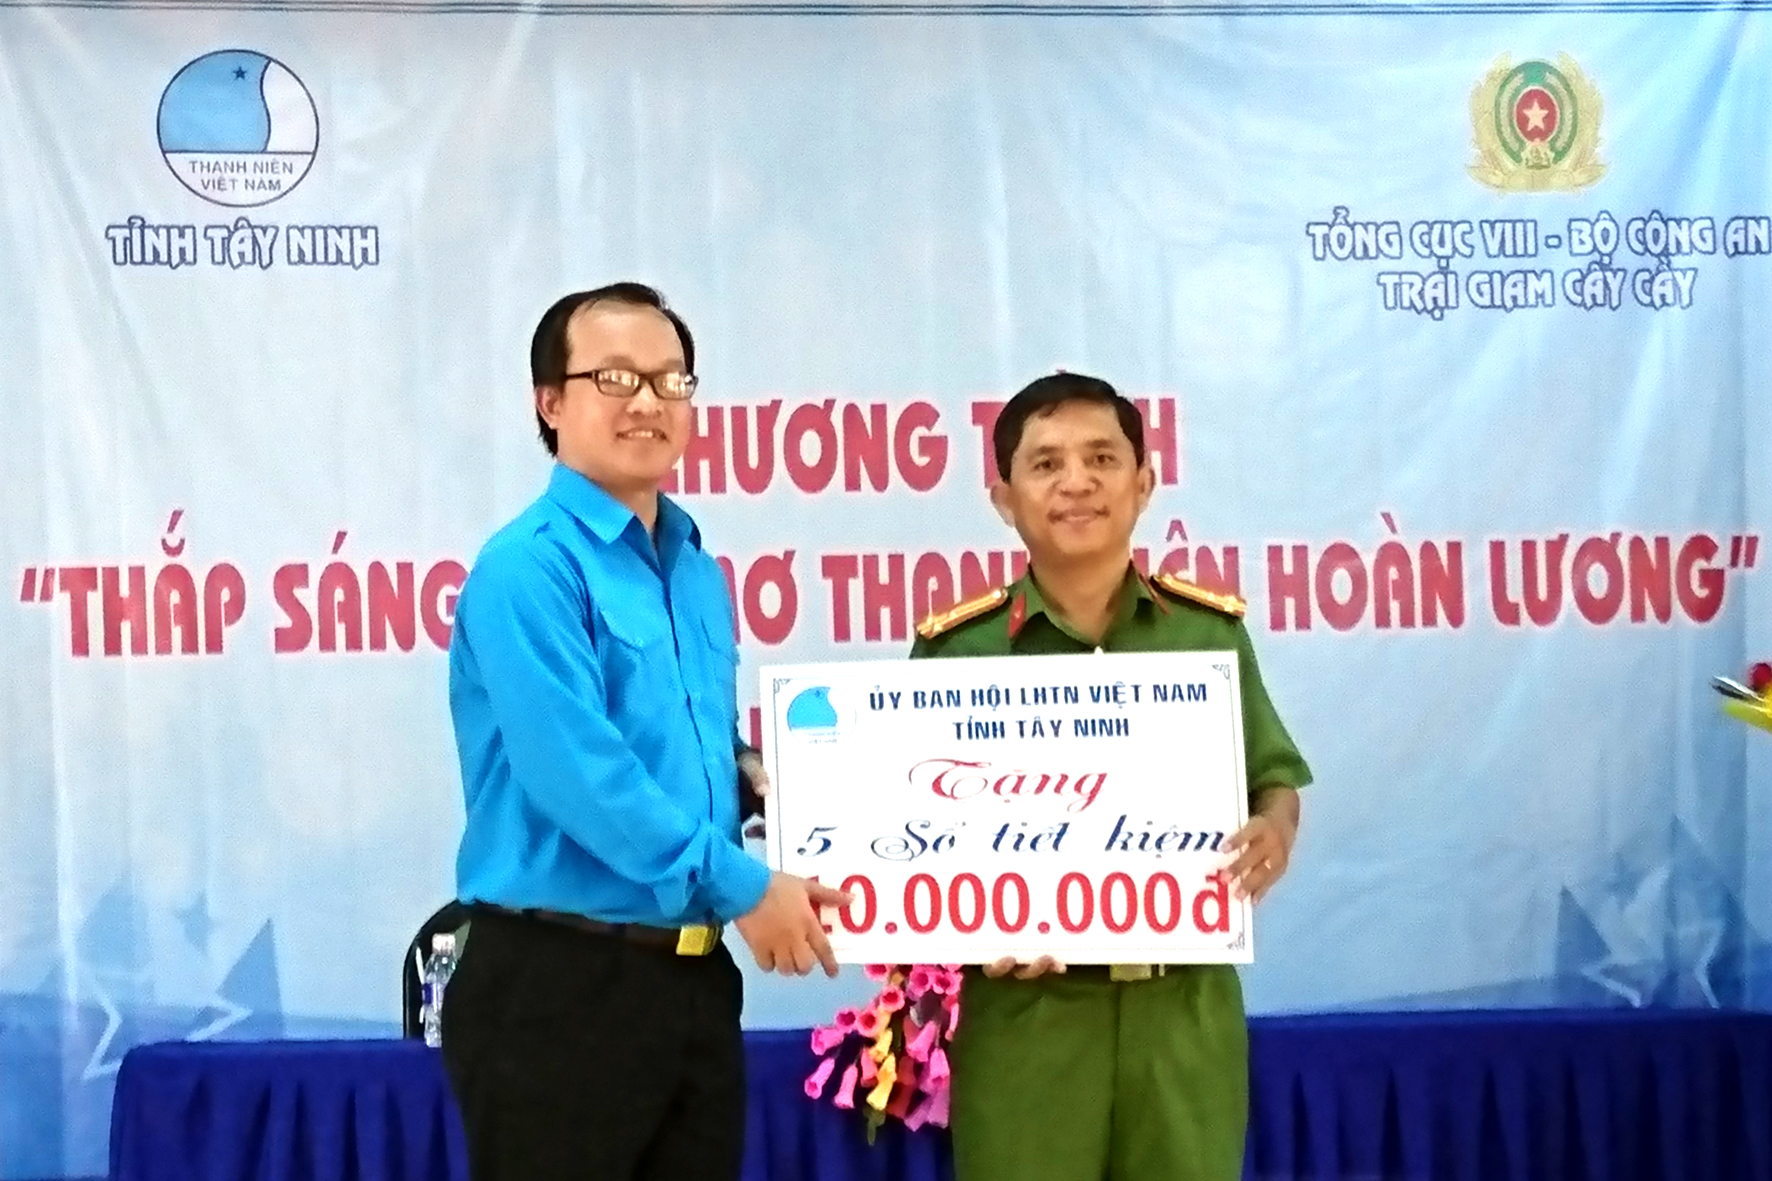 Hội Liên hiệp Thanh niên Việt Nam cũng đã trao bảng tượng trưng 05 sổ tiết kiệm nhằm hỗ trợ để các phạm nhân trong độ tuổi thanh niên có thể ổn định cuộc sống